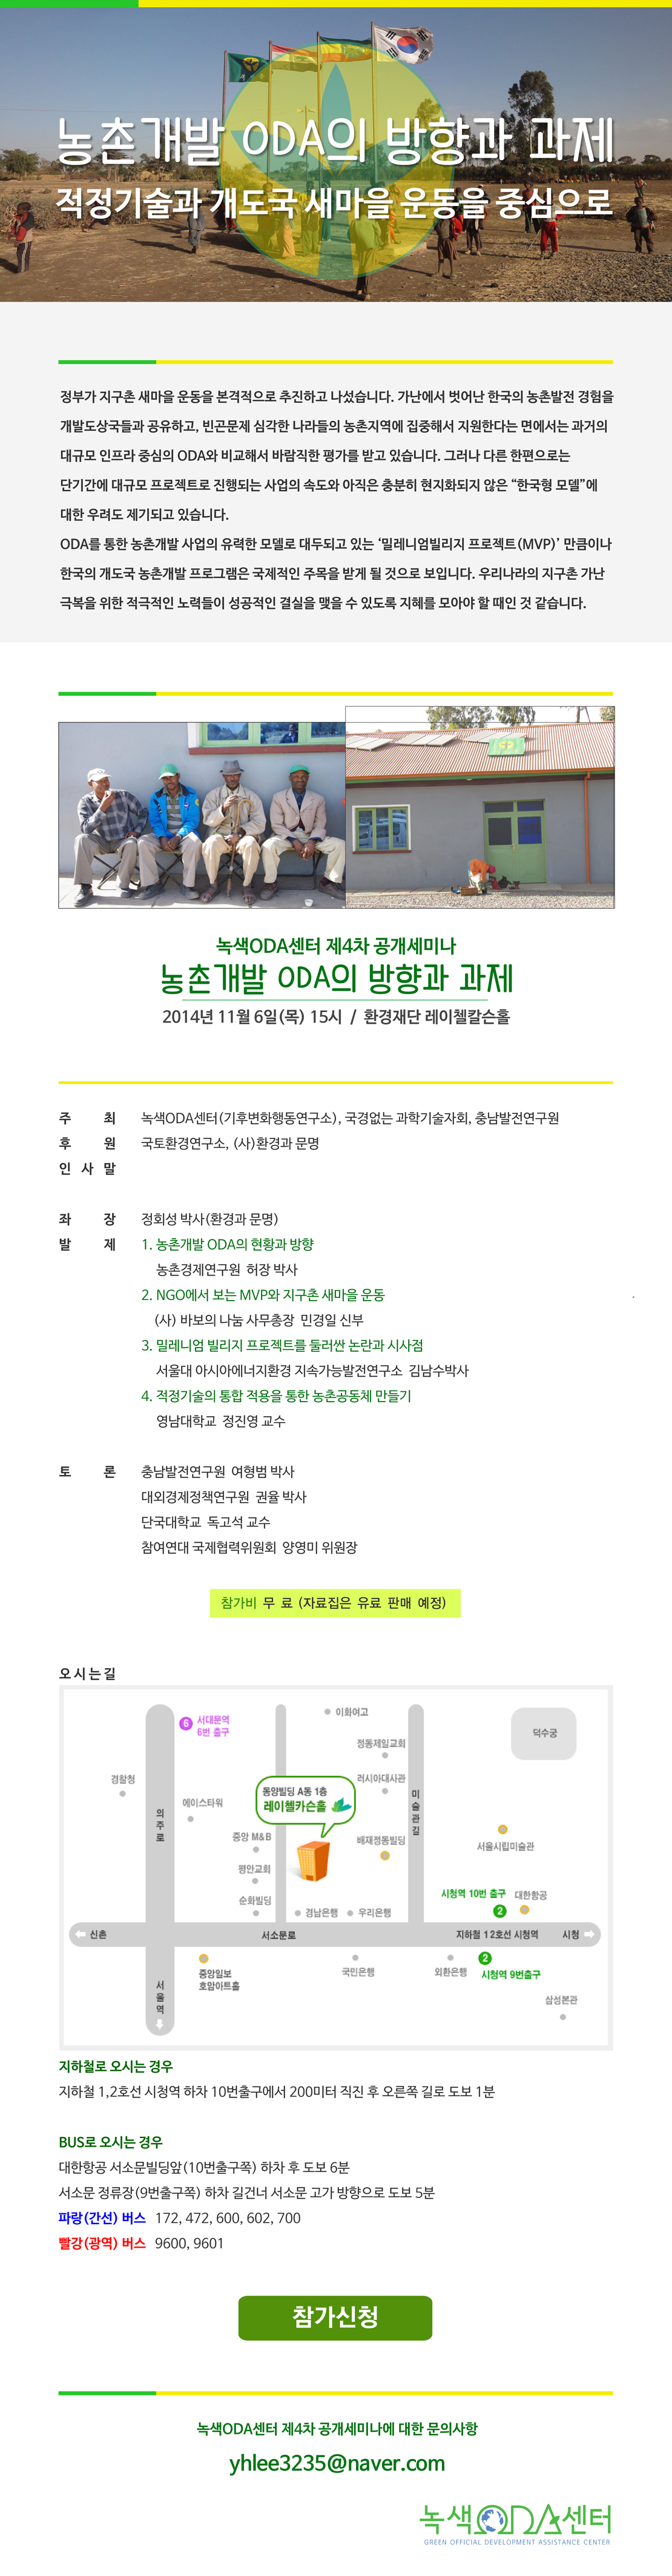 녹색ODA센터 4차공개세미나 웹자보(최종).jpg